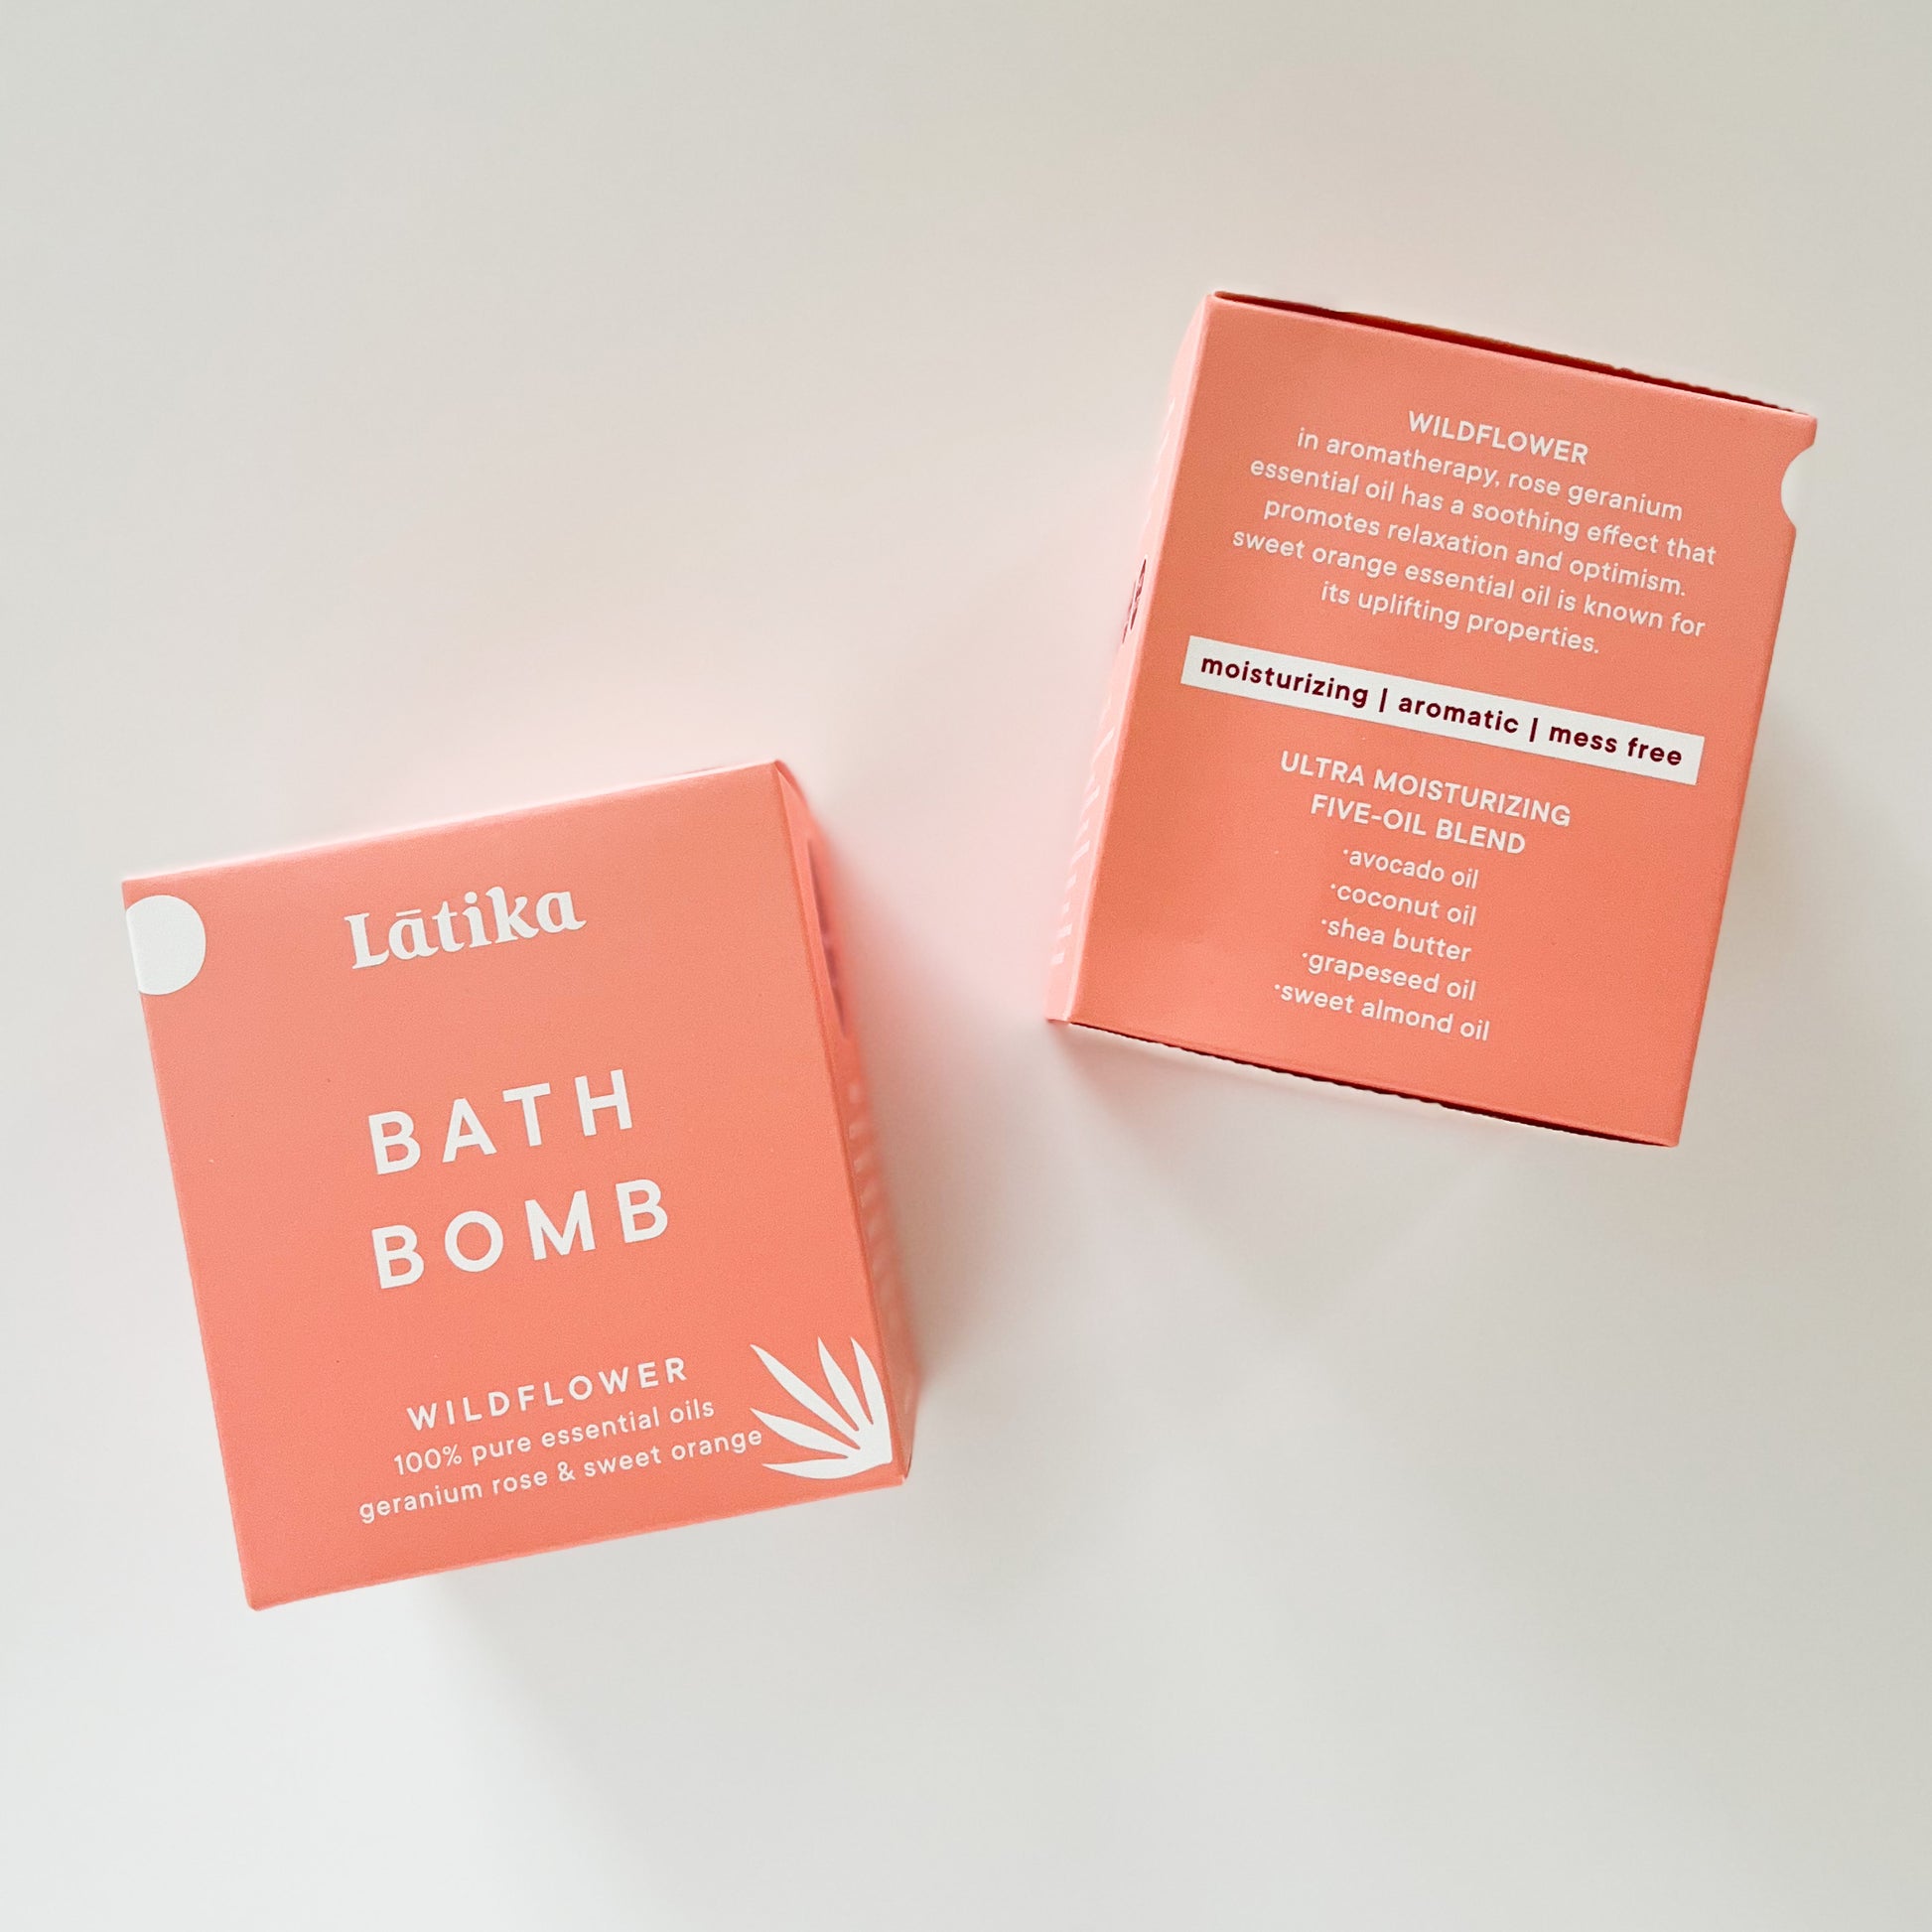 Latika Wildflower Aromatherapy Bath Bomb